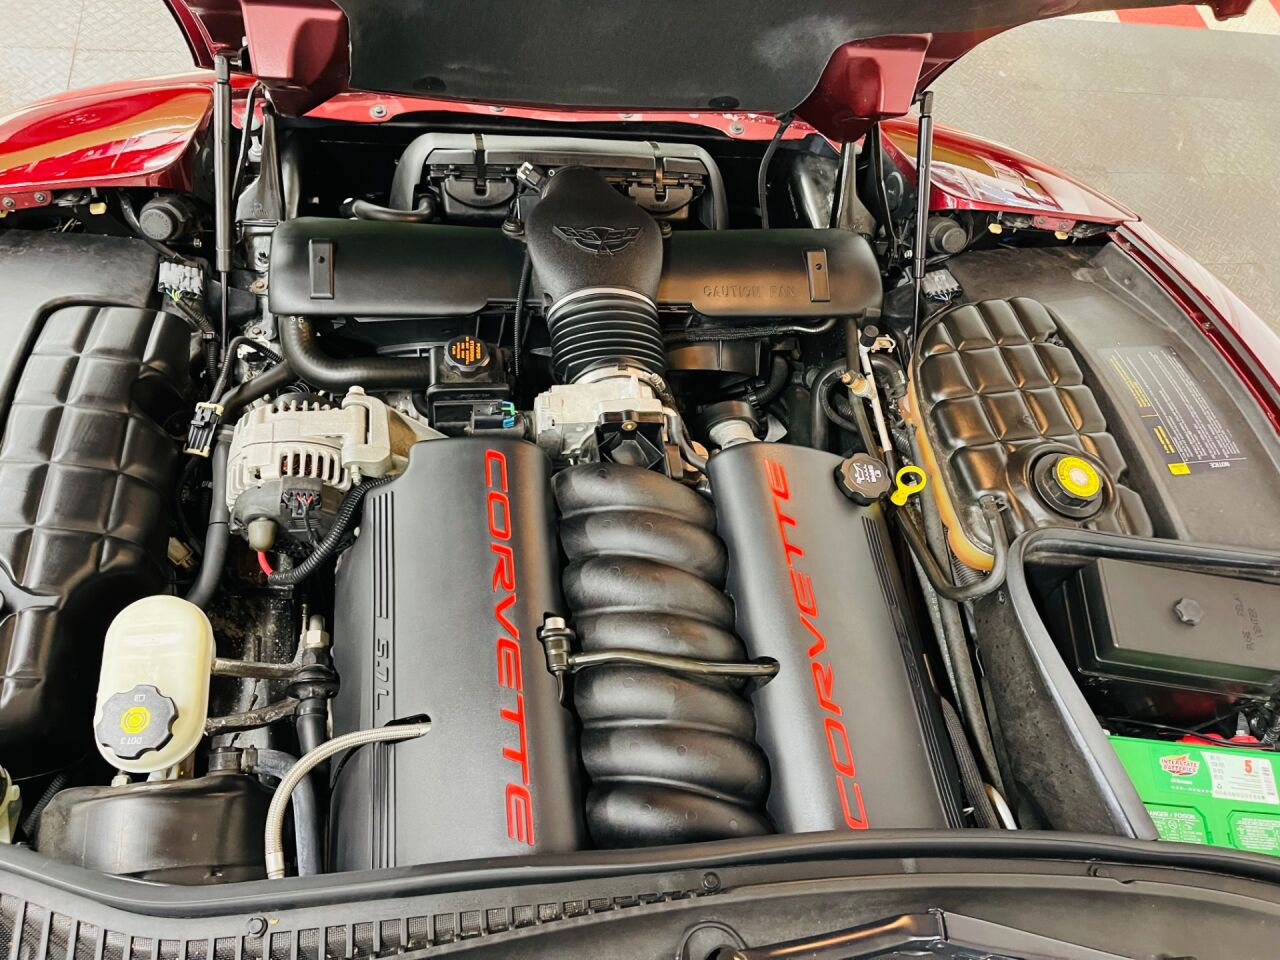 2003 Chevrolet Corvette 15